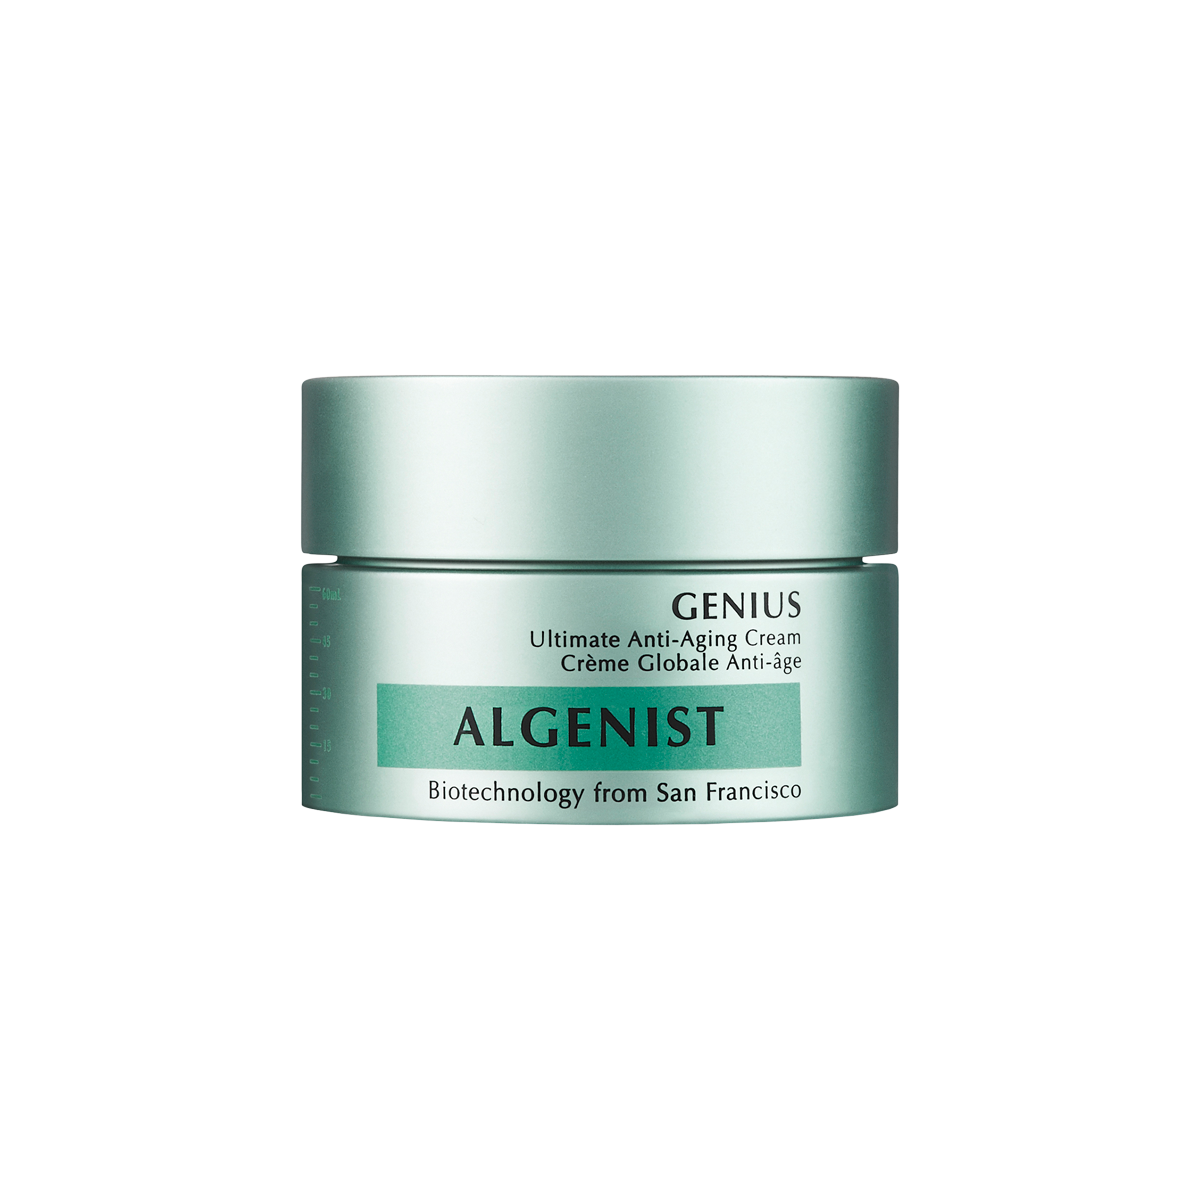 Algenist - Genius Ultimate Anti-Aging Cream